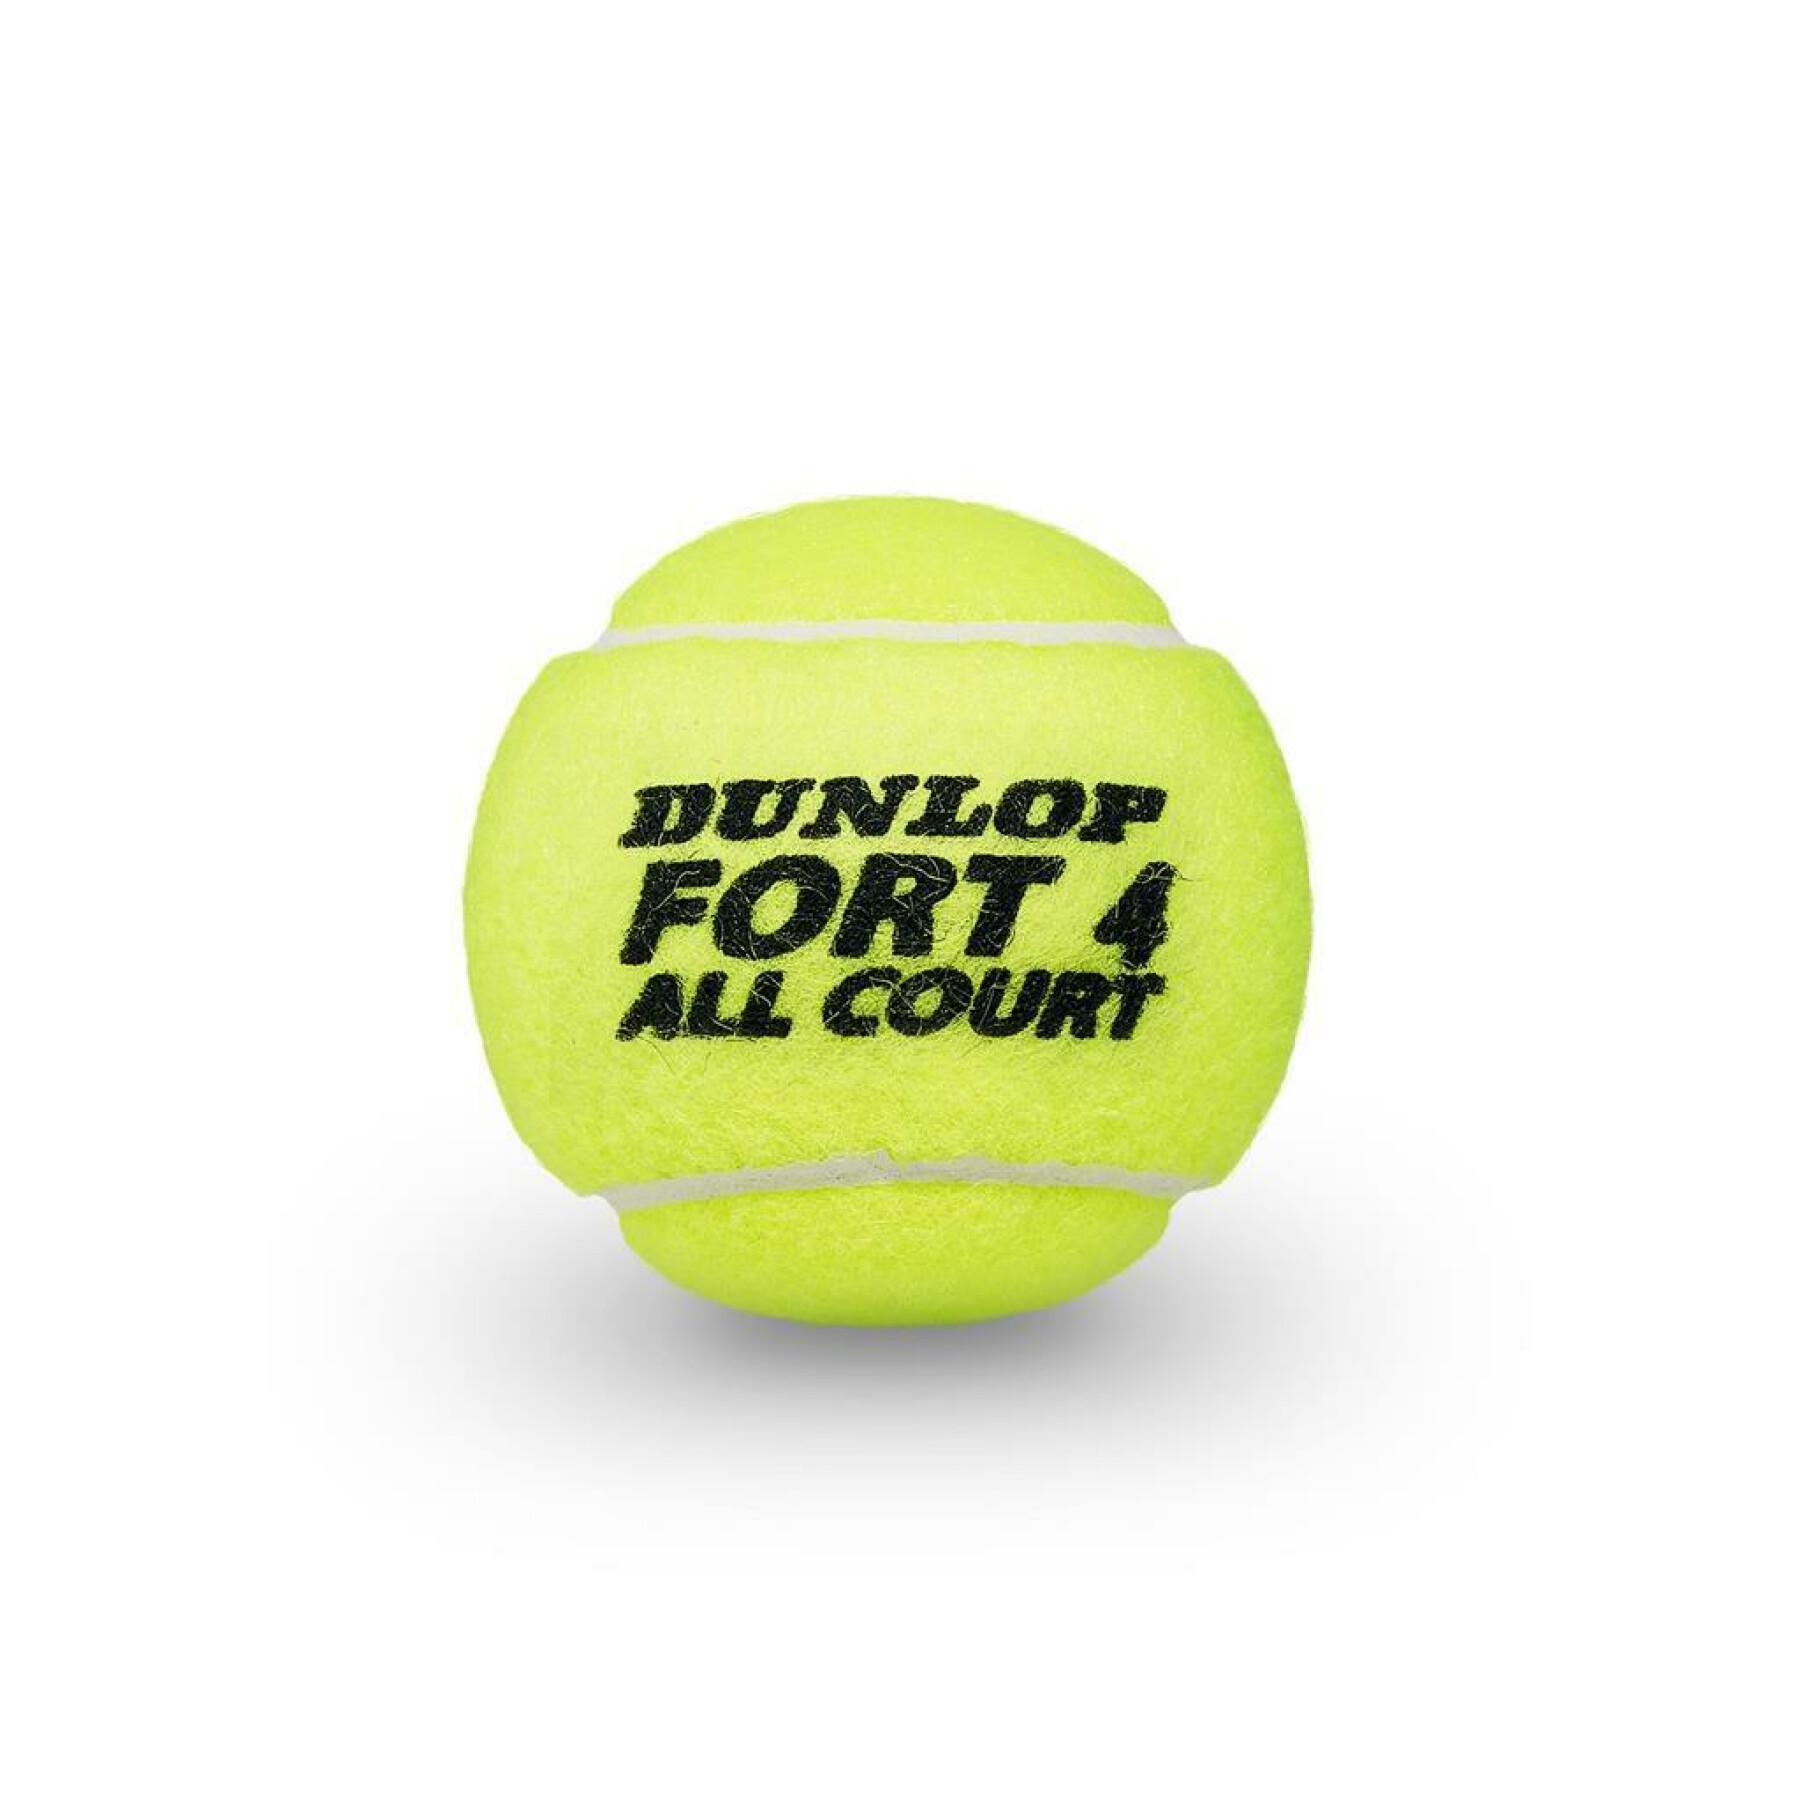 Set di 2 tubi di 4 palle da tennis Dunlop fort all court